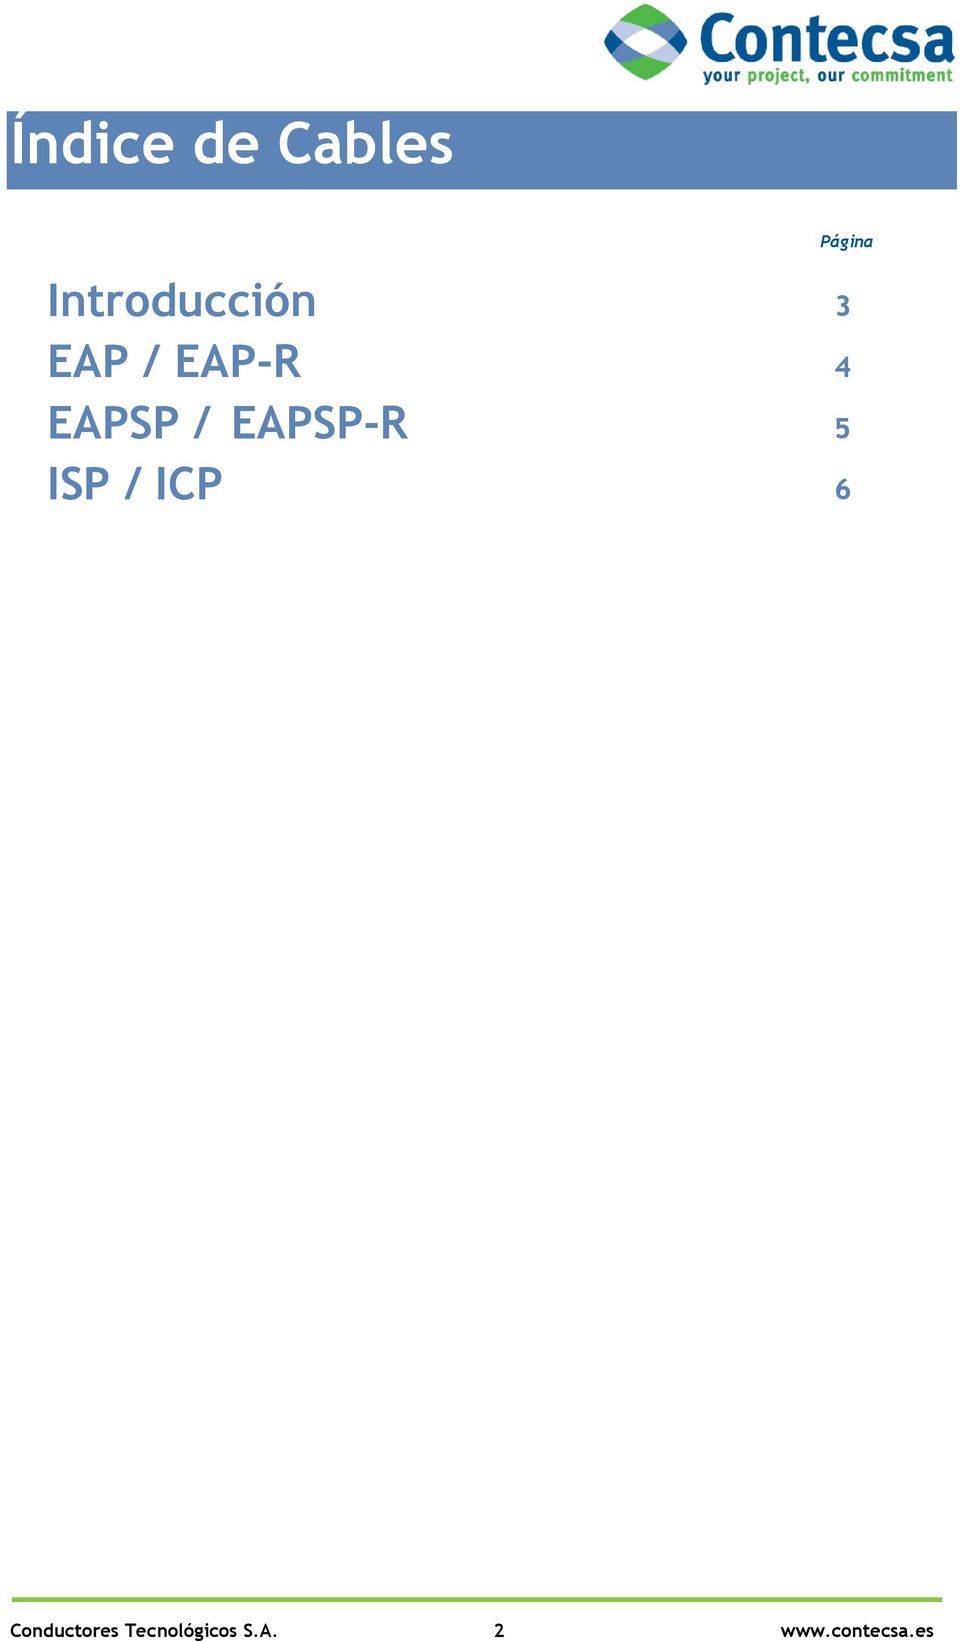 EAPSP / EAPSP-R 5 ISP / ICP 6